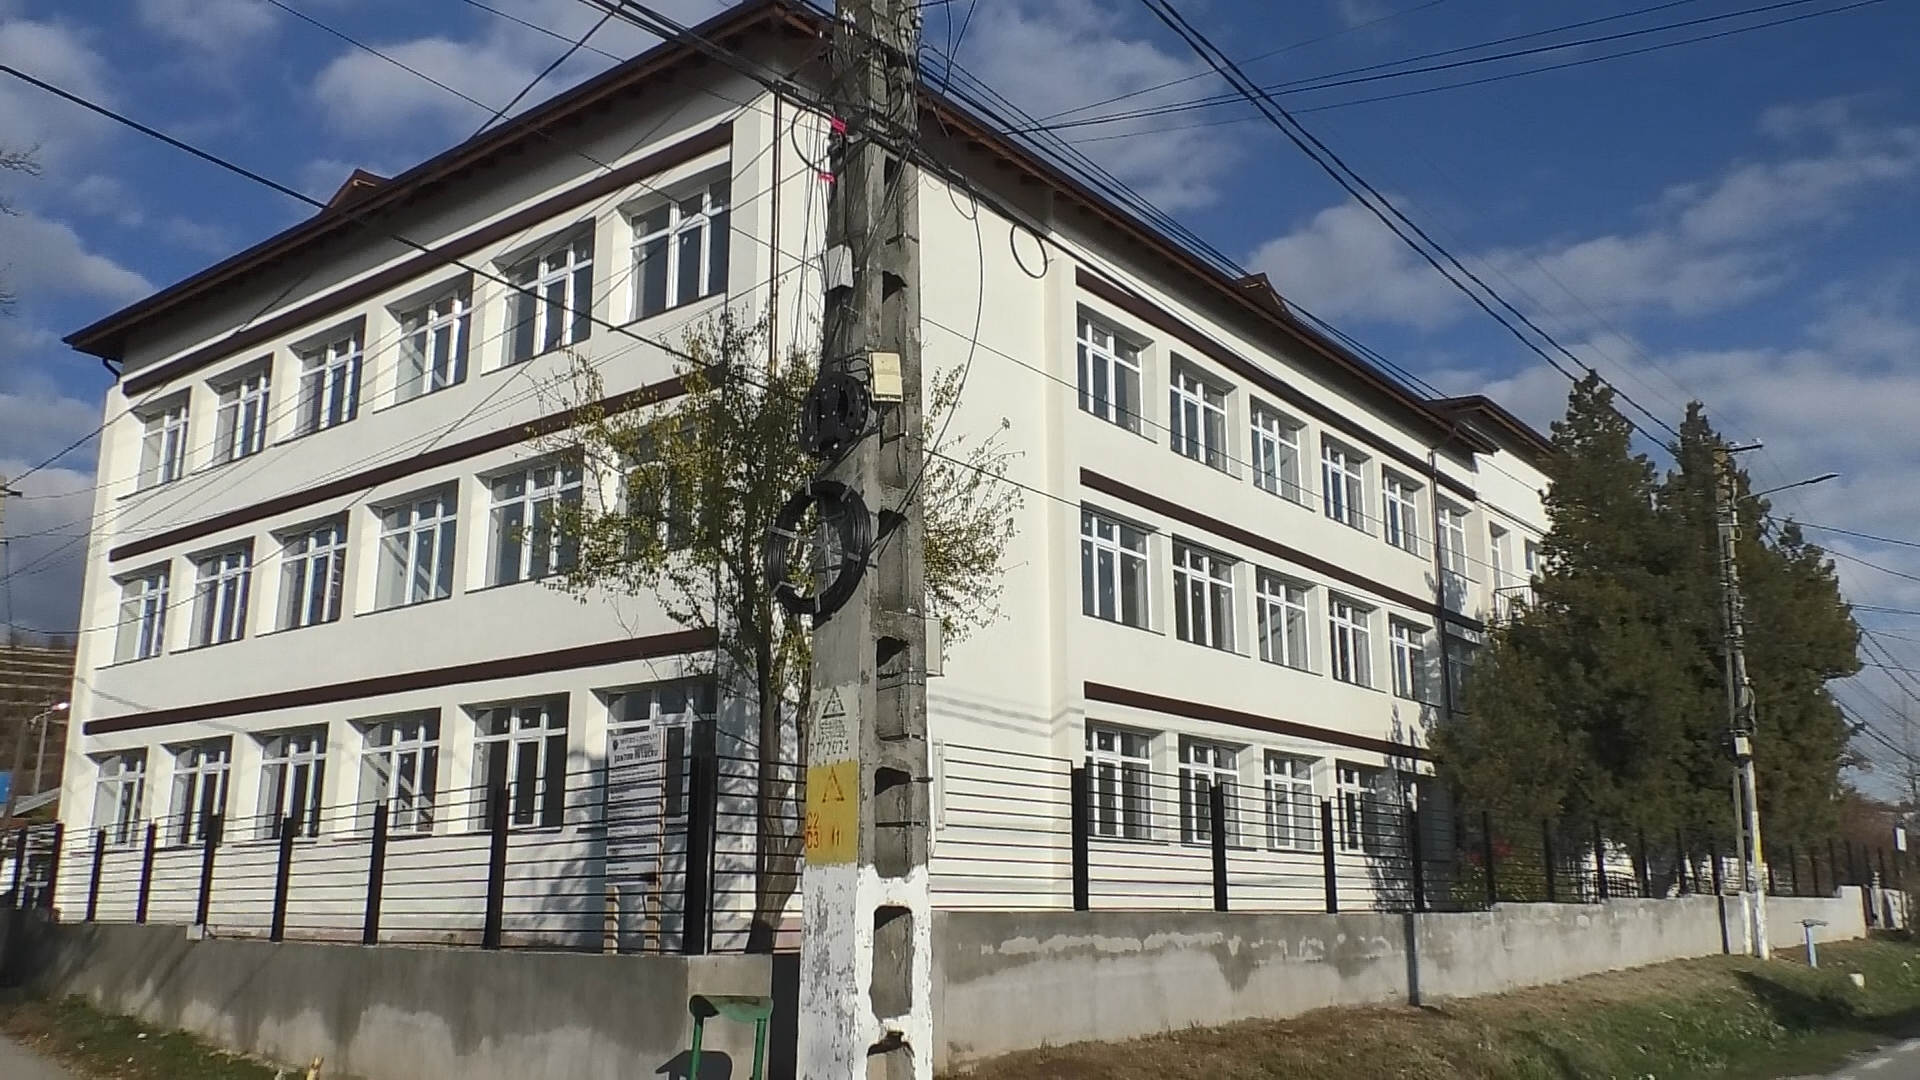 Vremea bună, permite administrației de la Răzvad să lucreze la modernizarea străzilor în satul Gorgota și la modernizarea Școlii Răzvad